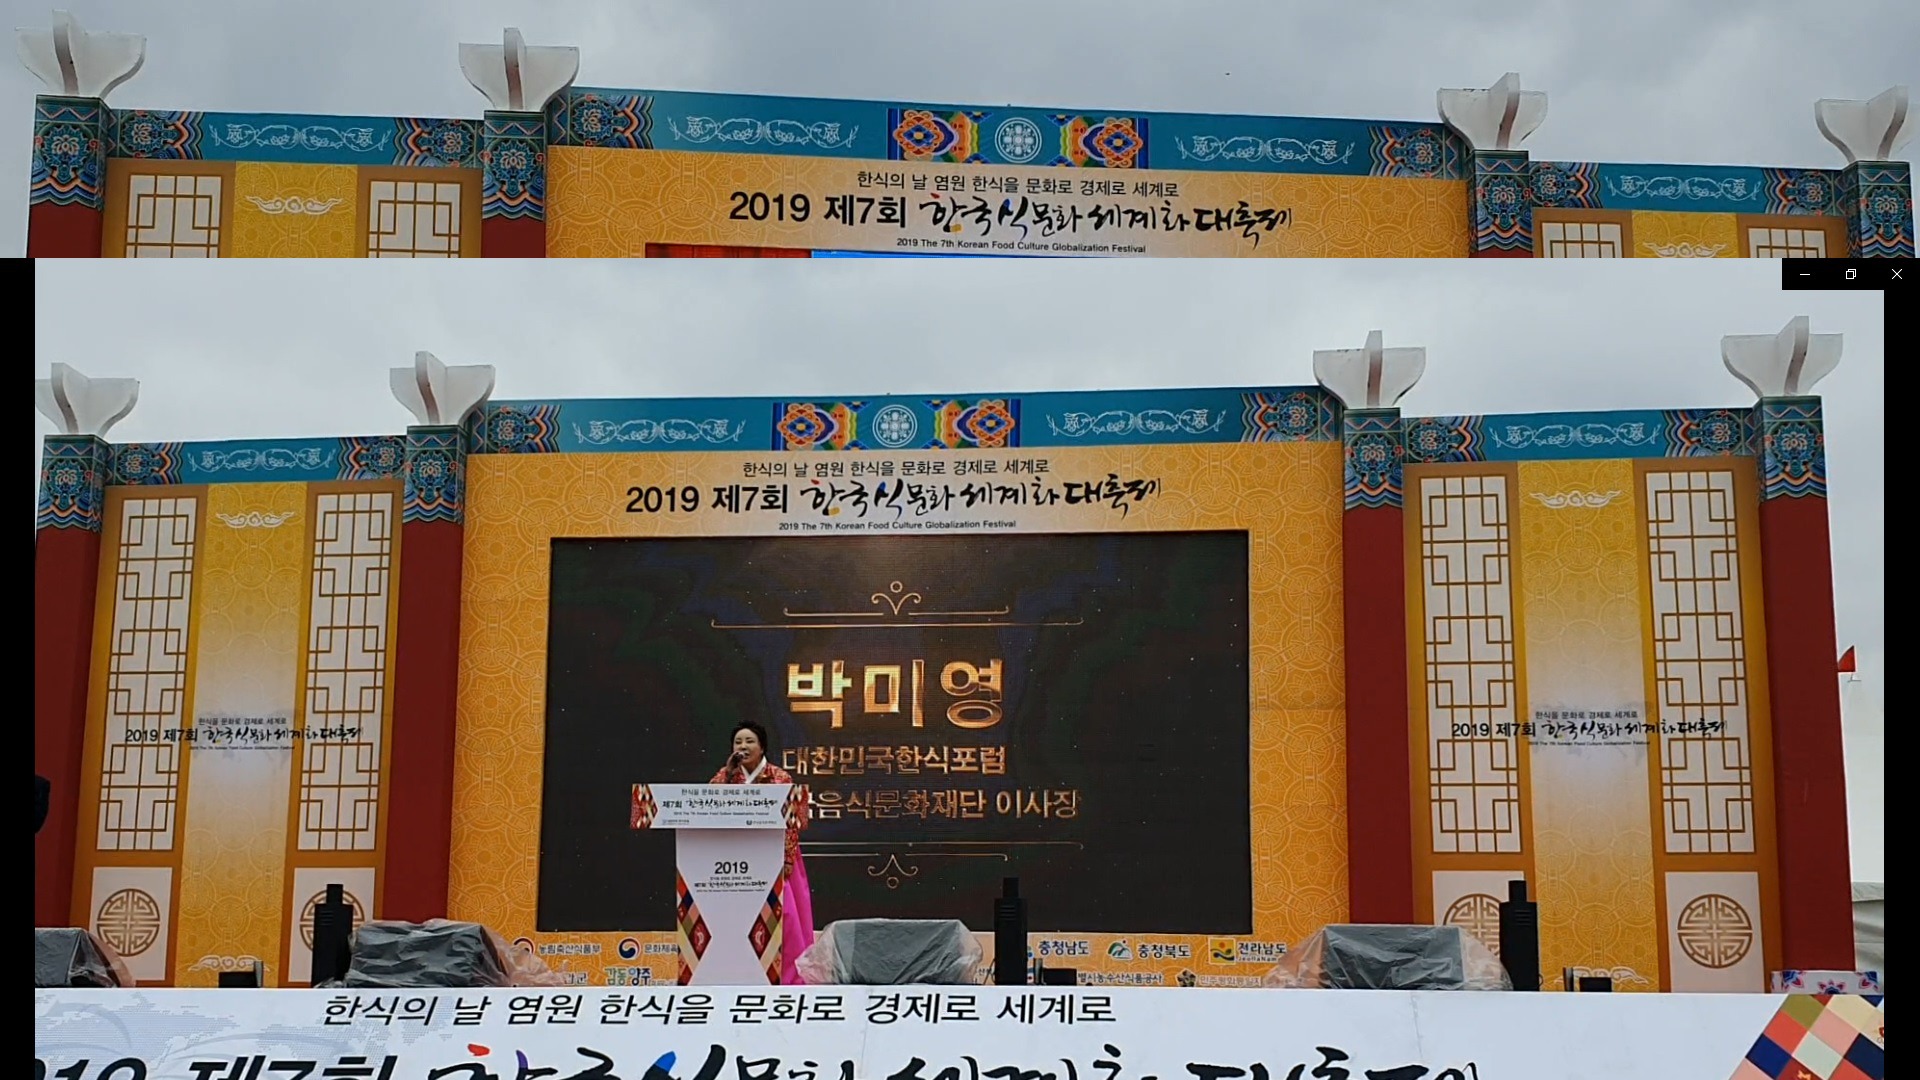  국제엔젤봉시단, 제7회 한국식문화세계화대축제 개막식에 봉사활동 펼쳐